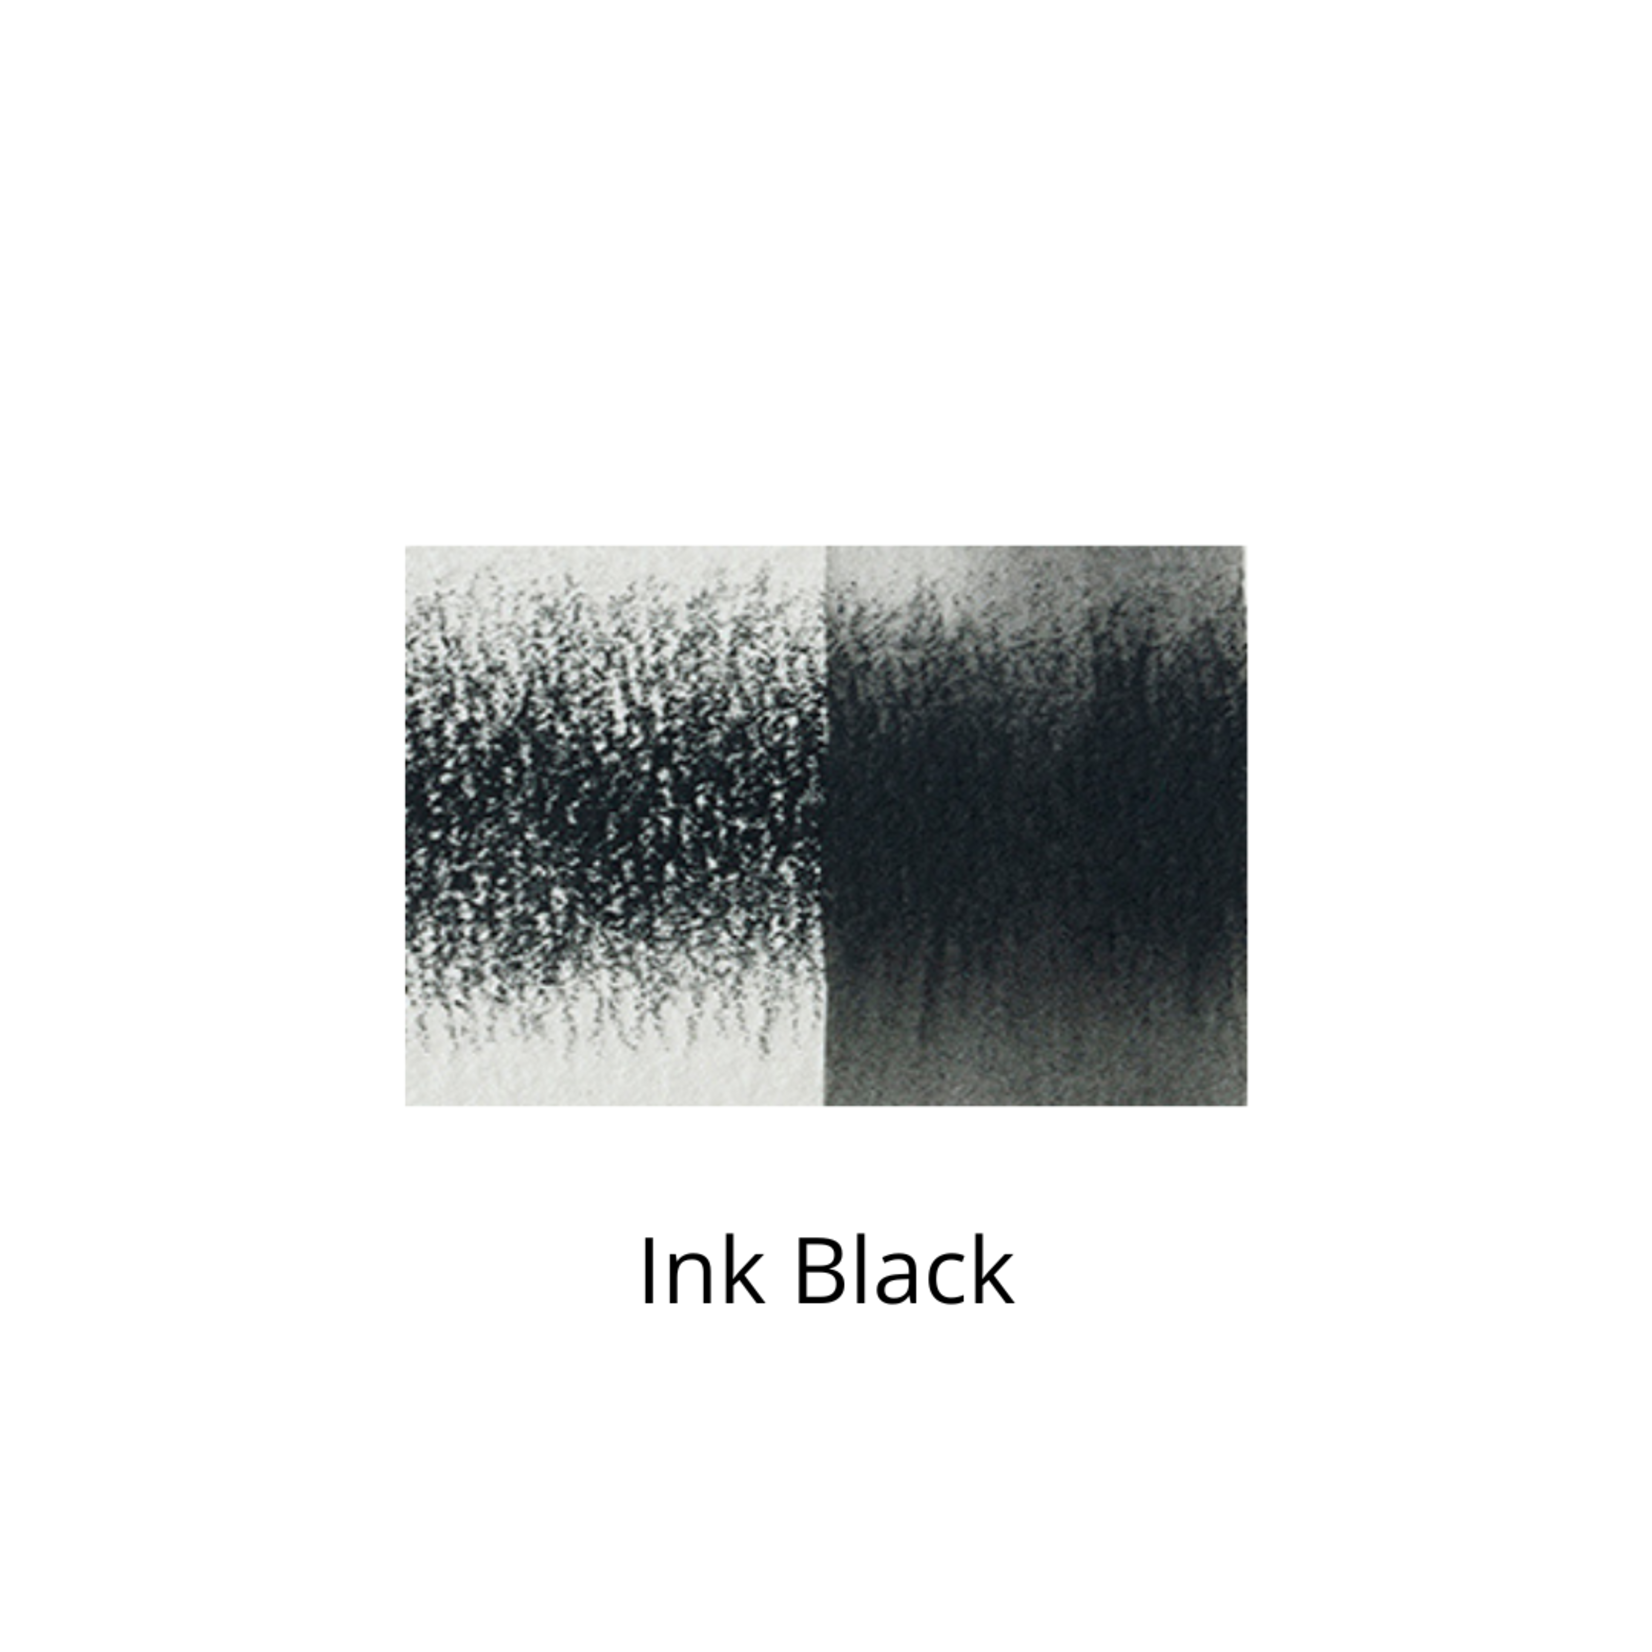 DERWENT DERWENT INKTENSE PENCIL 2200 INK BLACK